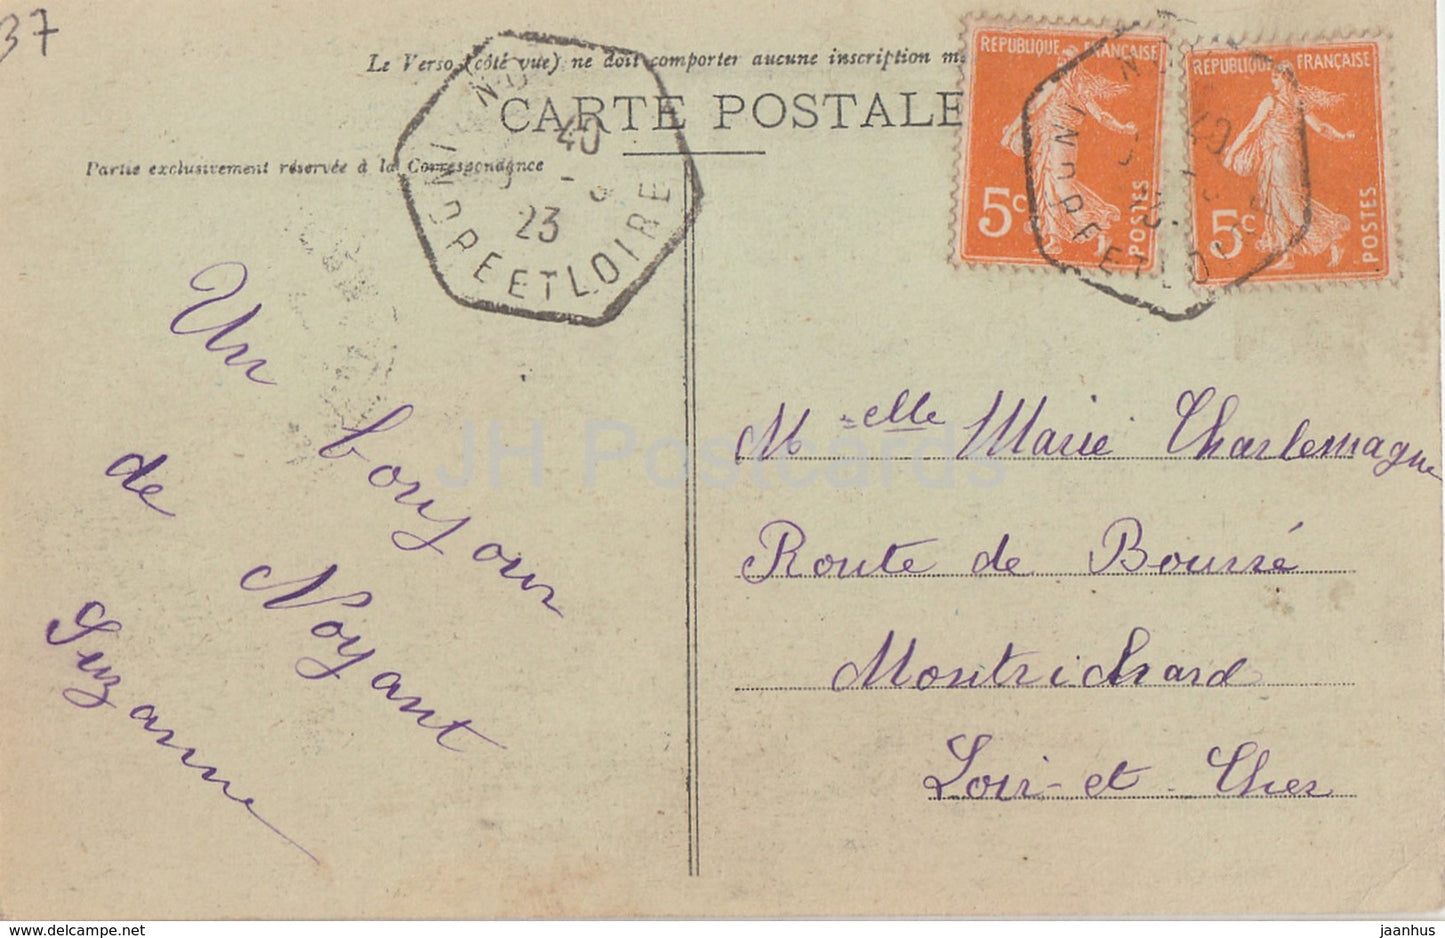 Le Château de Brou - près Noyant - château - 55 - carte postale ancienne - 1923 - France - occasion